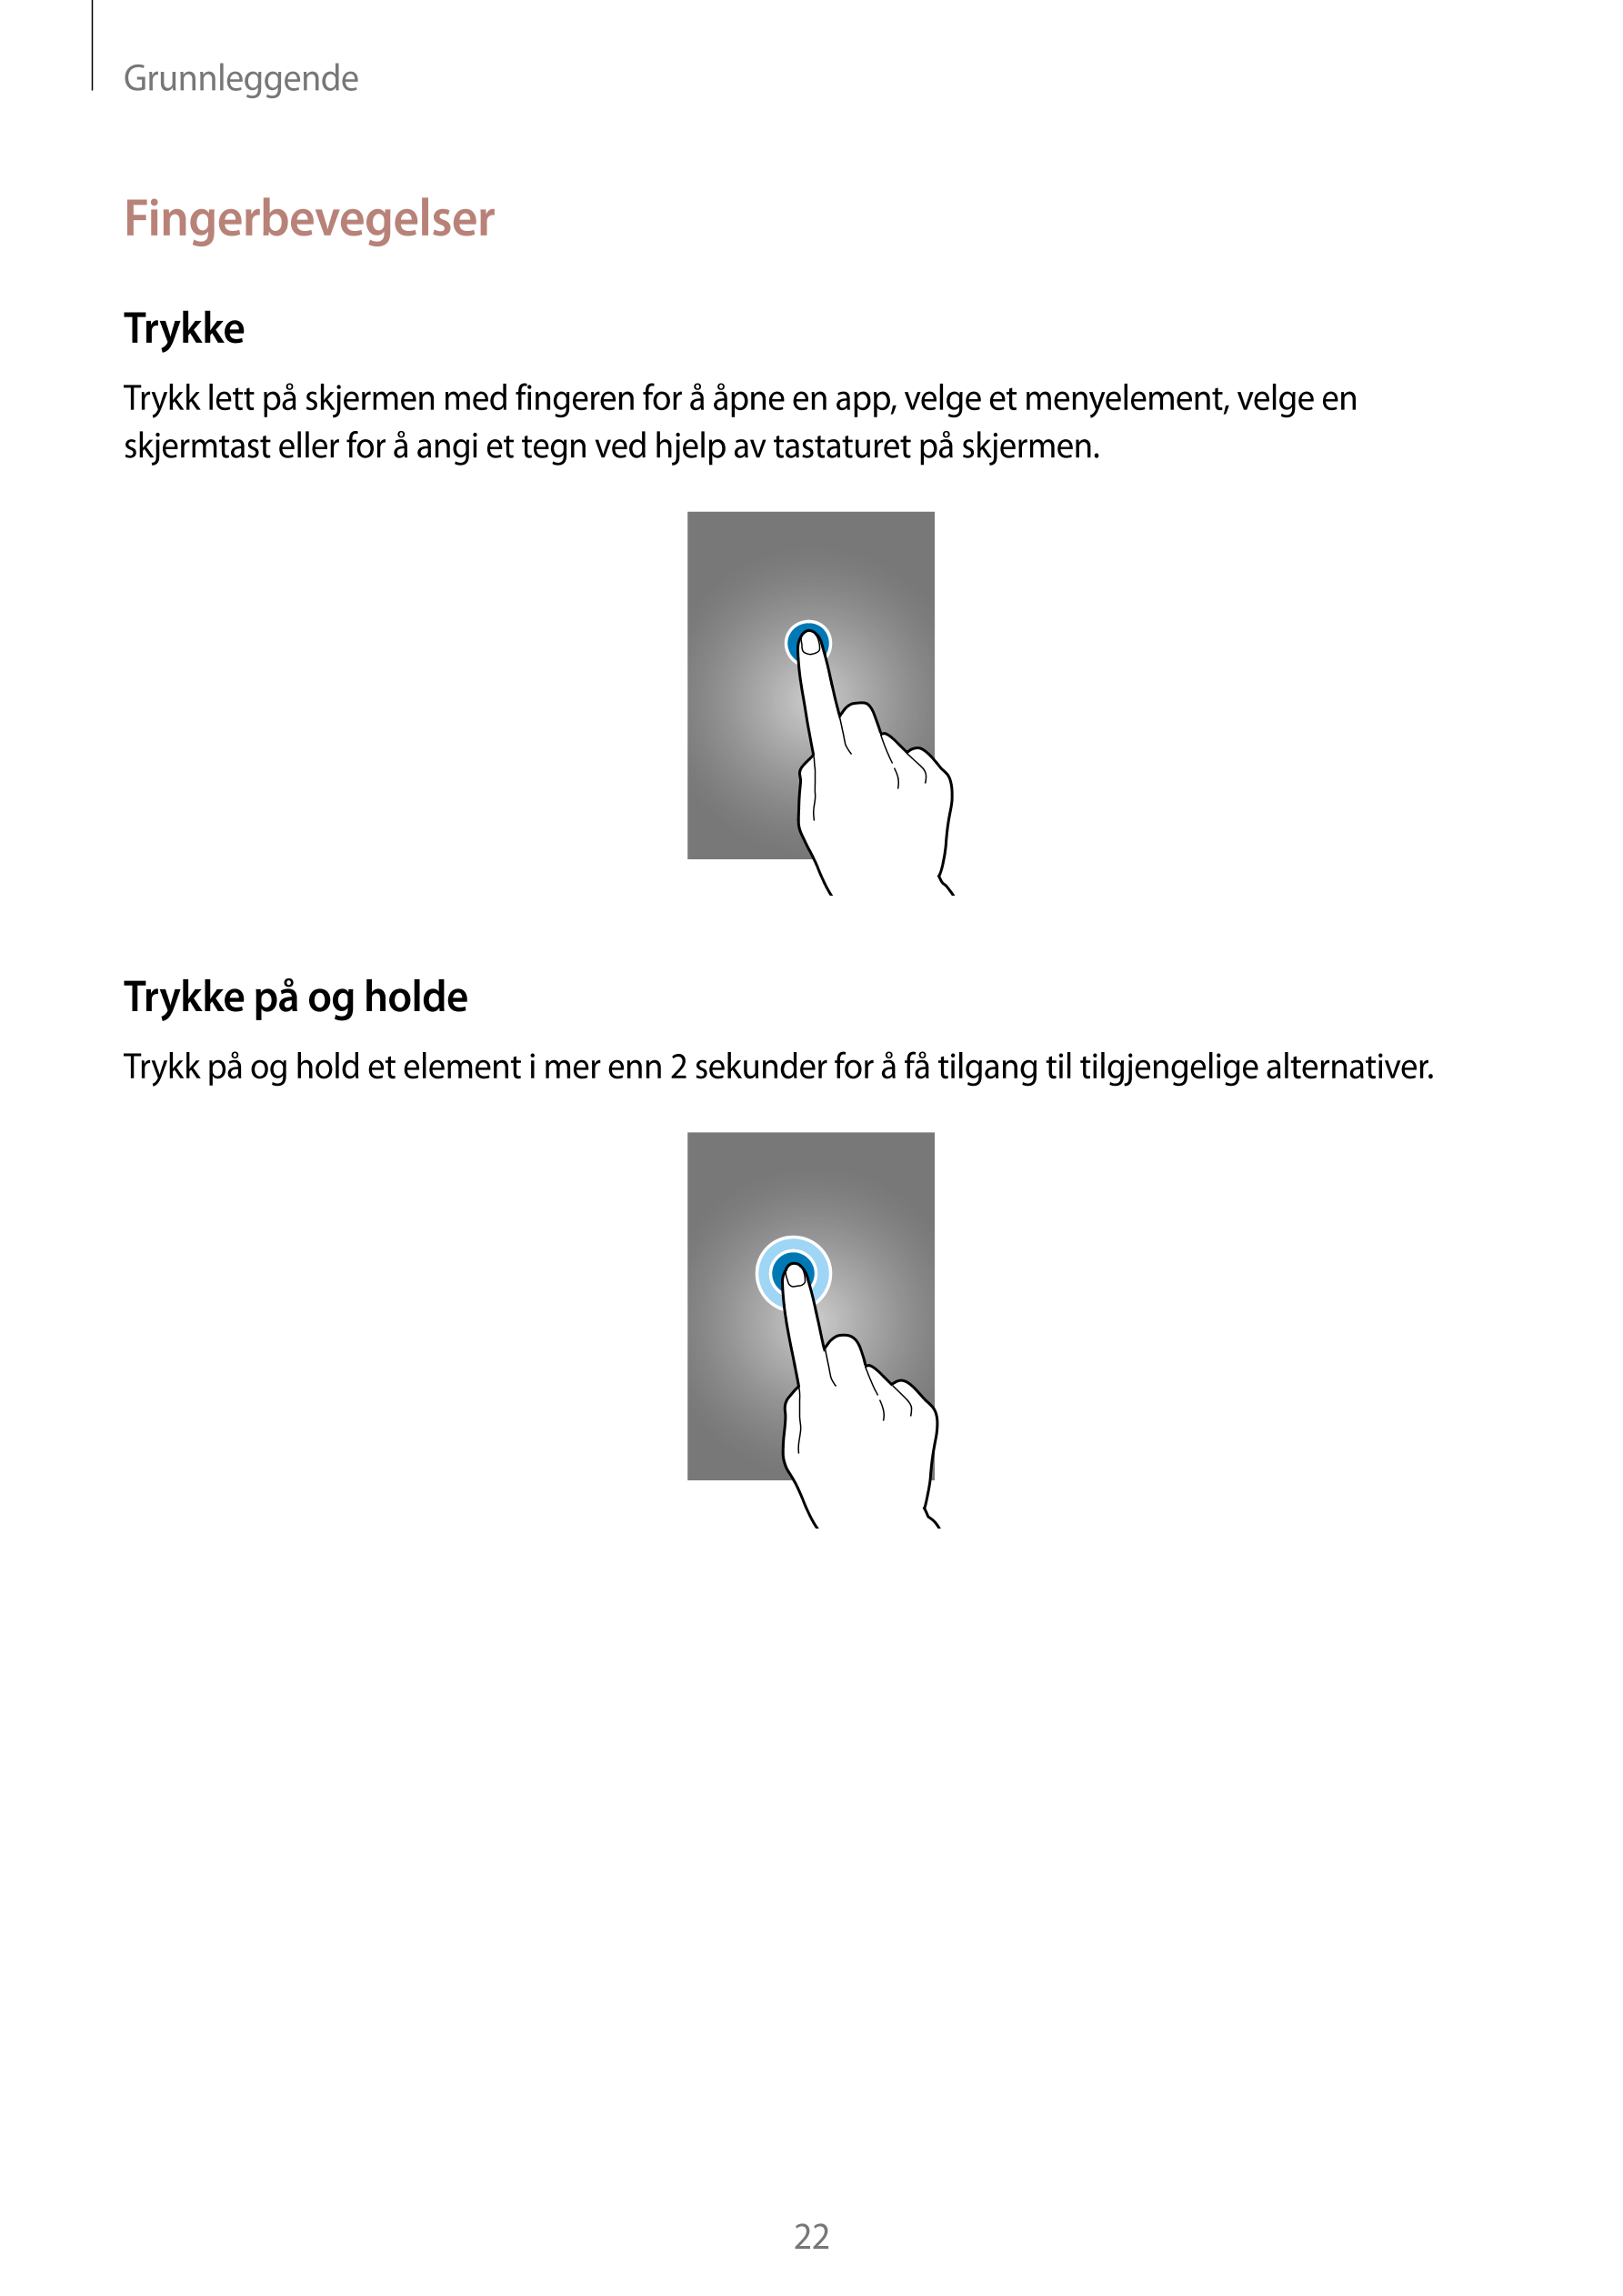 Grunnleggende
Fingerbevegelser
Trykke
Trykk lett på skjermen med fingeren for å åpne en app, velge et menyelement, velge en 
skj